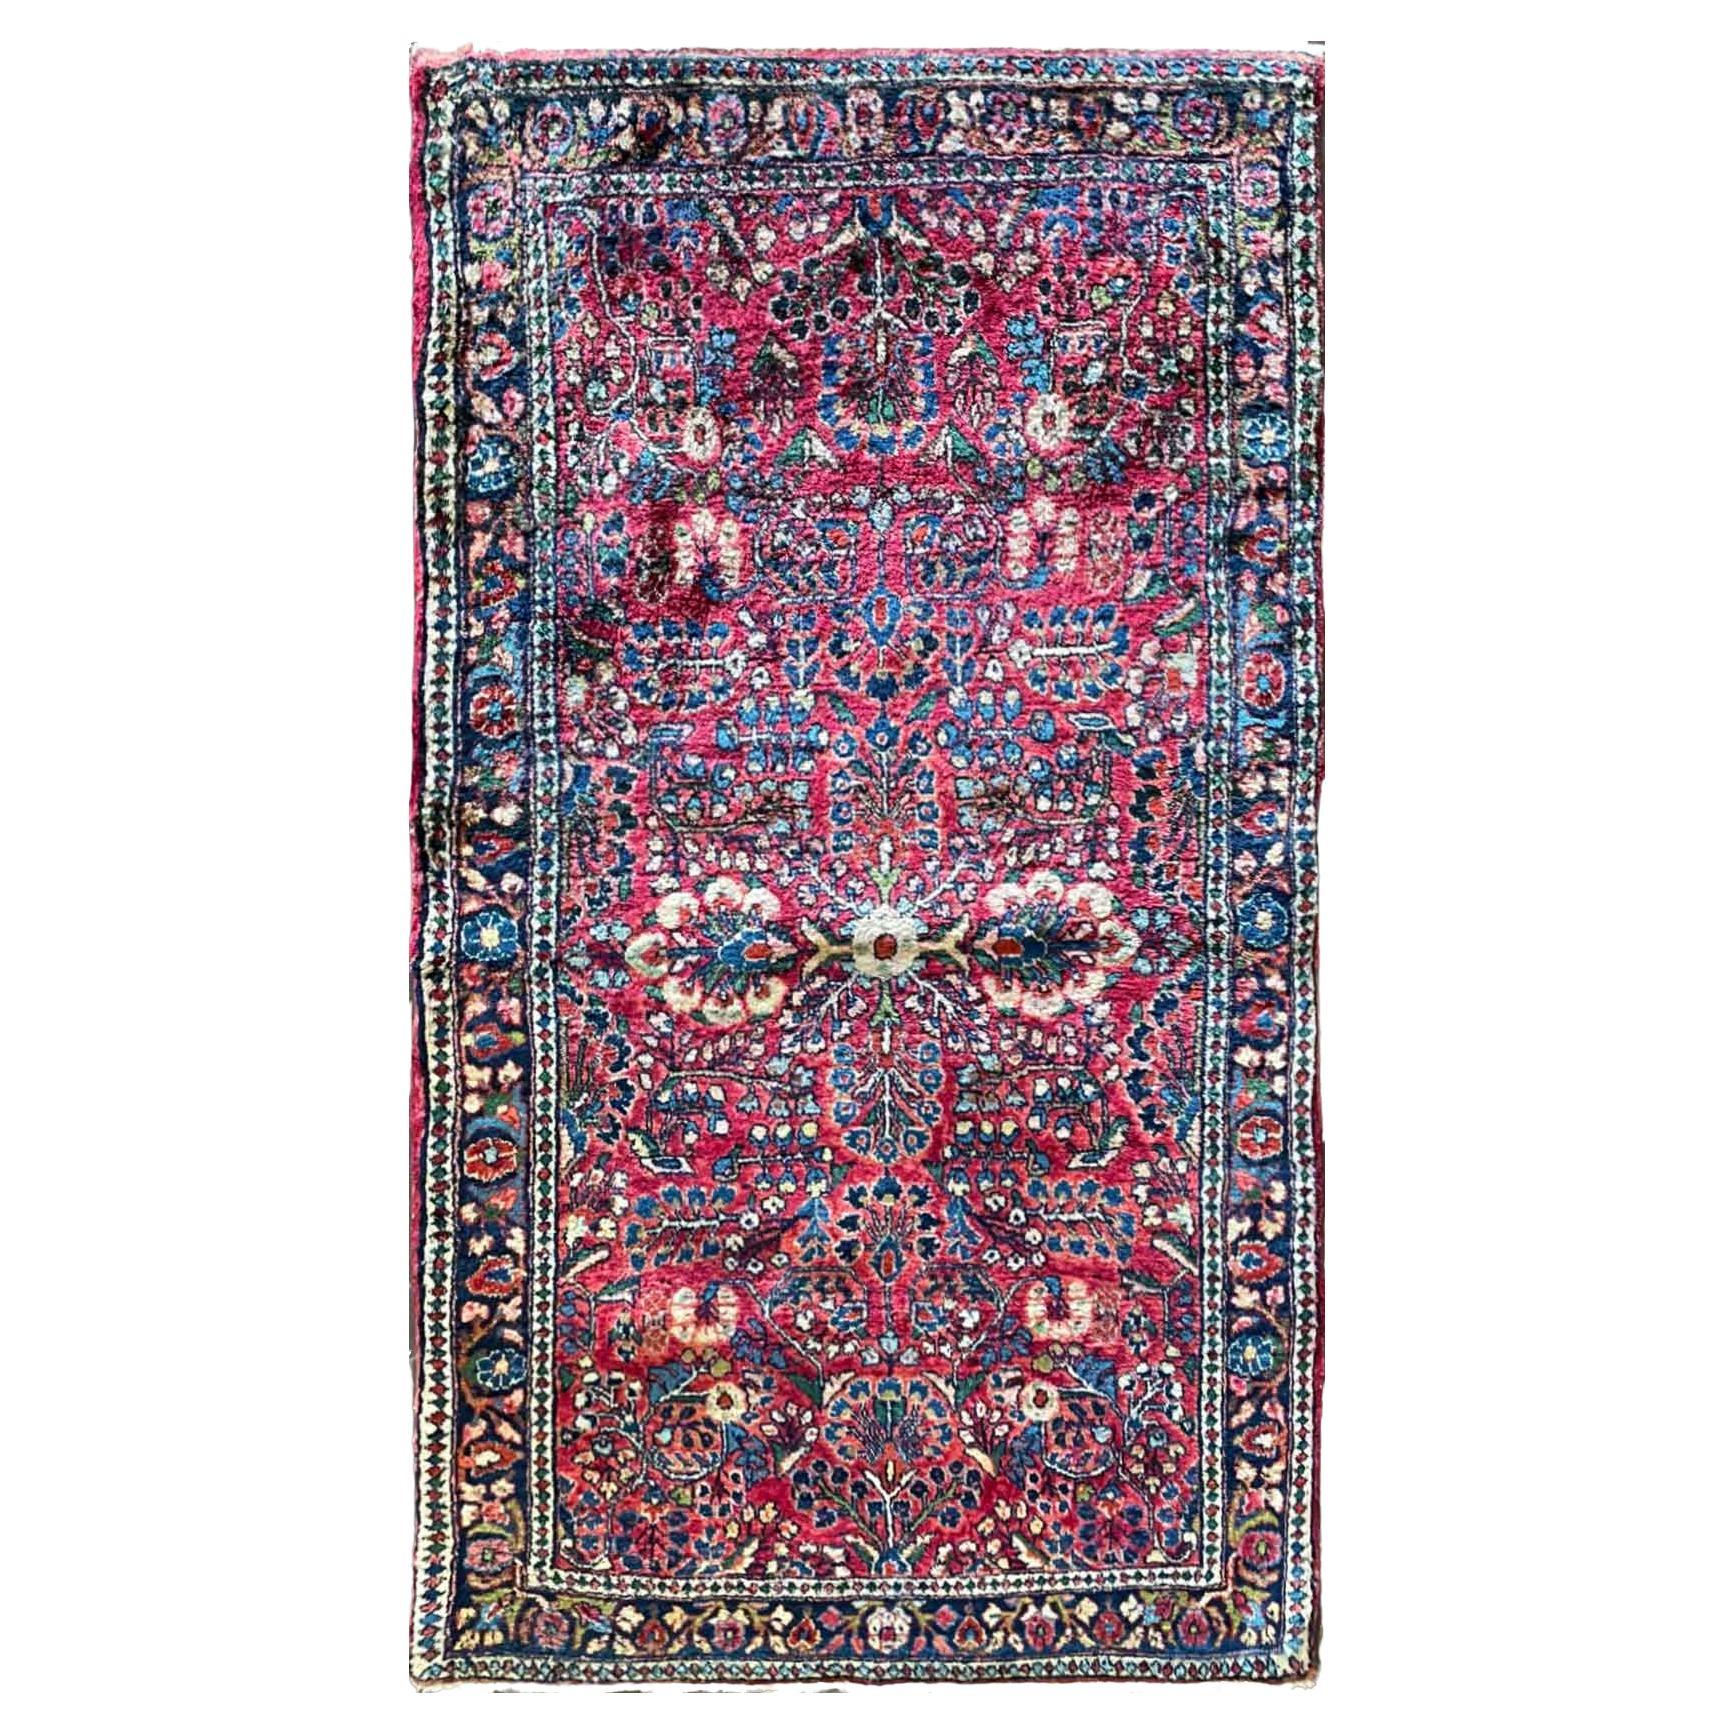 Antique Persian Sarouk Rug, c-1920, 2'6" x 4'10" For Sale